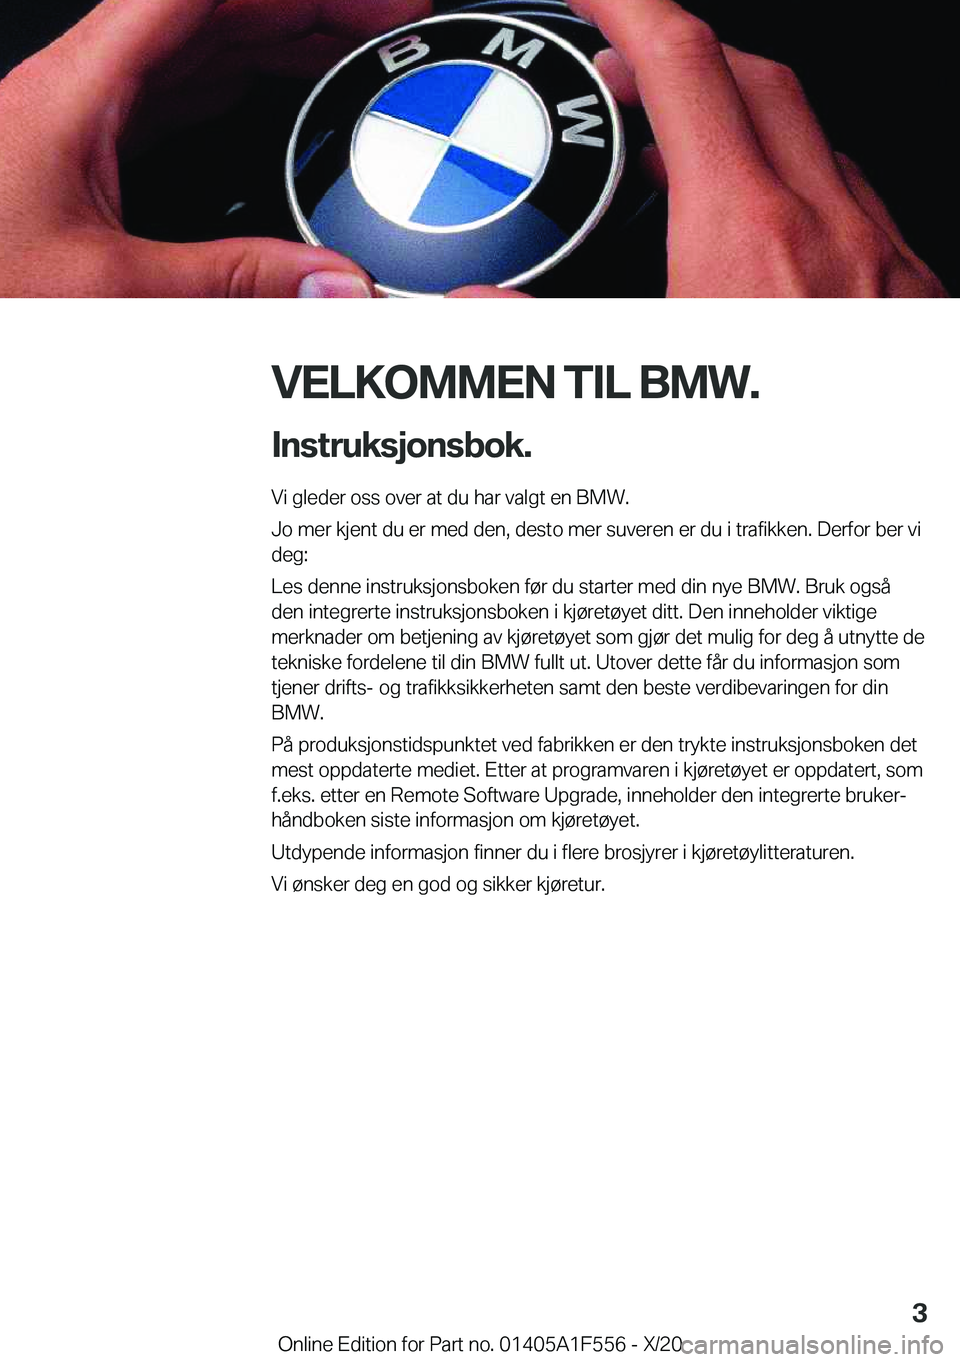 BMW X5 2021  InstruksjonsbØker (in Norwegian) �V�E�L�K�O�M�M�E�N��T�I�L��B�M�W�.�I�n�s�t�r�u�k�s�j�o�n�s�b�o�k�.
�V�i��g�l�e�d�e�r��o�s�s��o�v�e�r��a�t��d�u��h�a�r��v�a�l�g�t��e�n��B�M�W�.
�J�o��m�e�r��k�j�e�n�t��d�u��e�r��m�e�d�